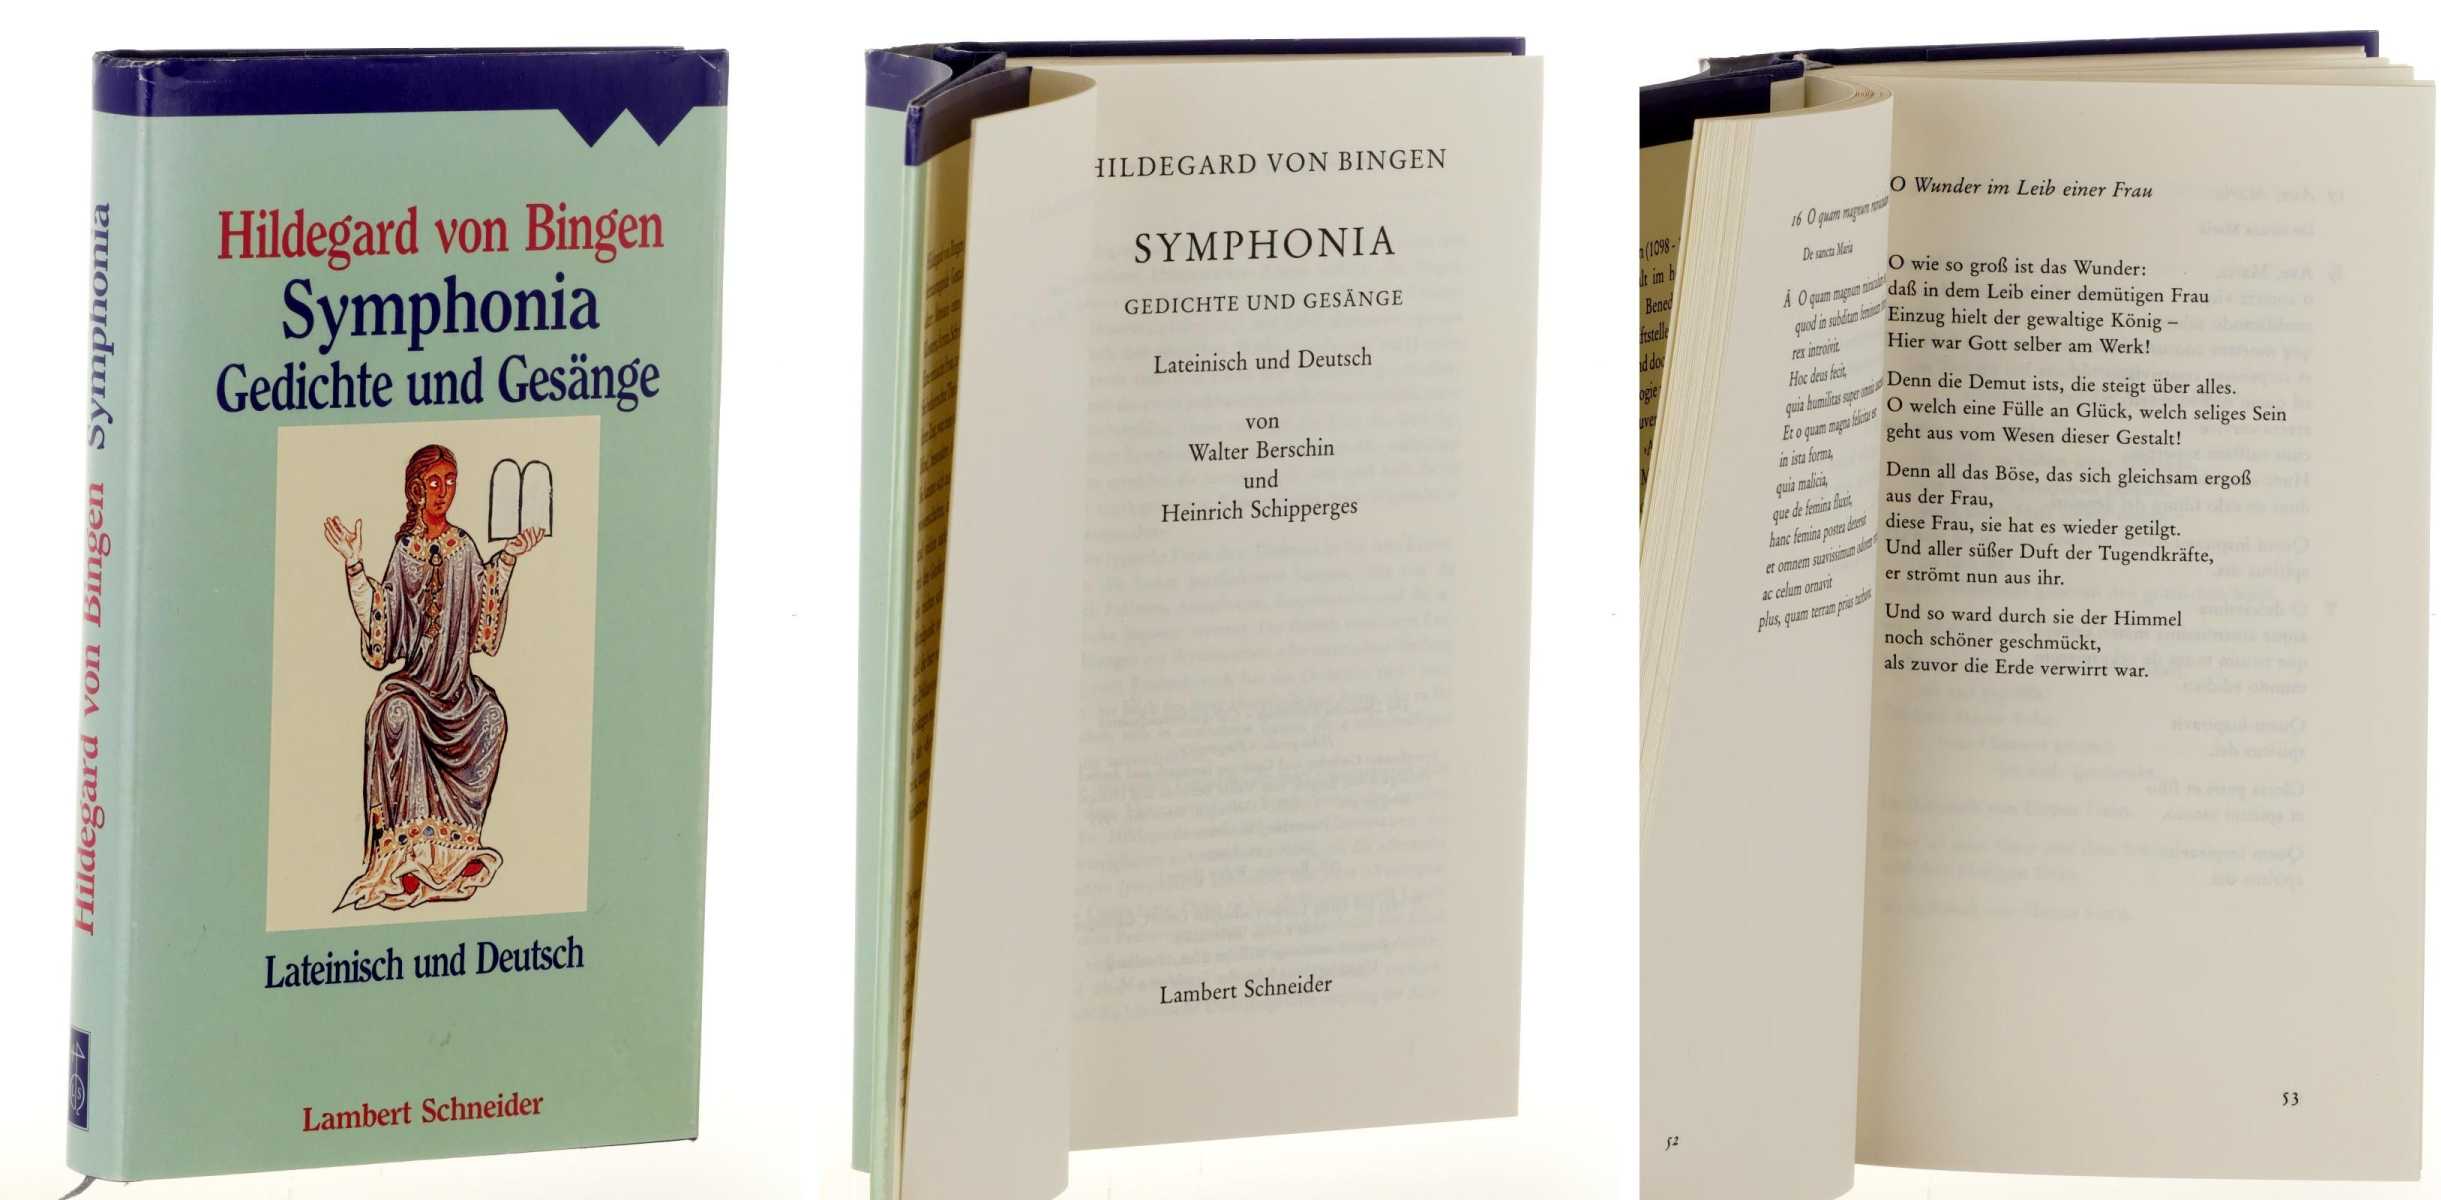 Hildegard von Bingen:  Symphonia. Gedichte und Gesänge. Lateinisch und deutsch Von Walter Berschin und Heinrich Schipperges. 